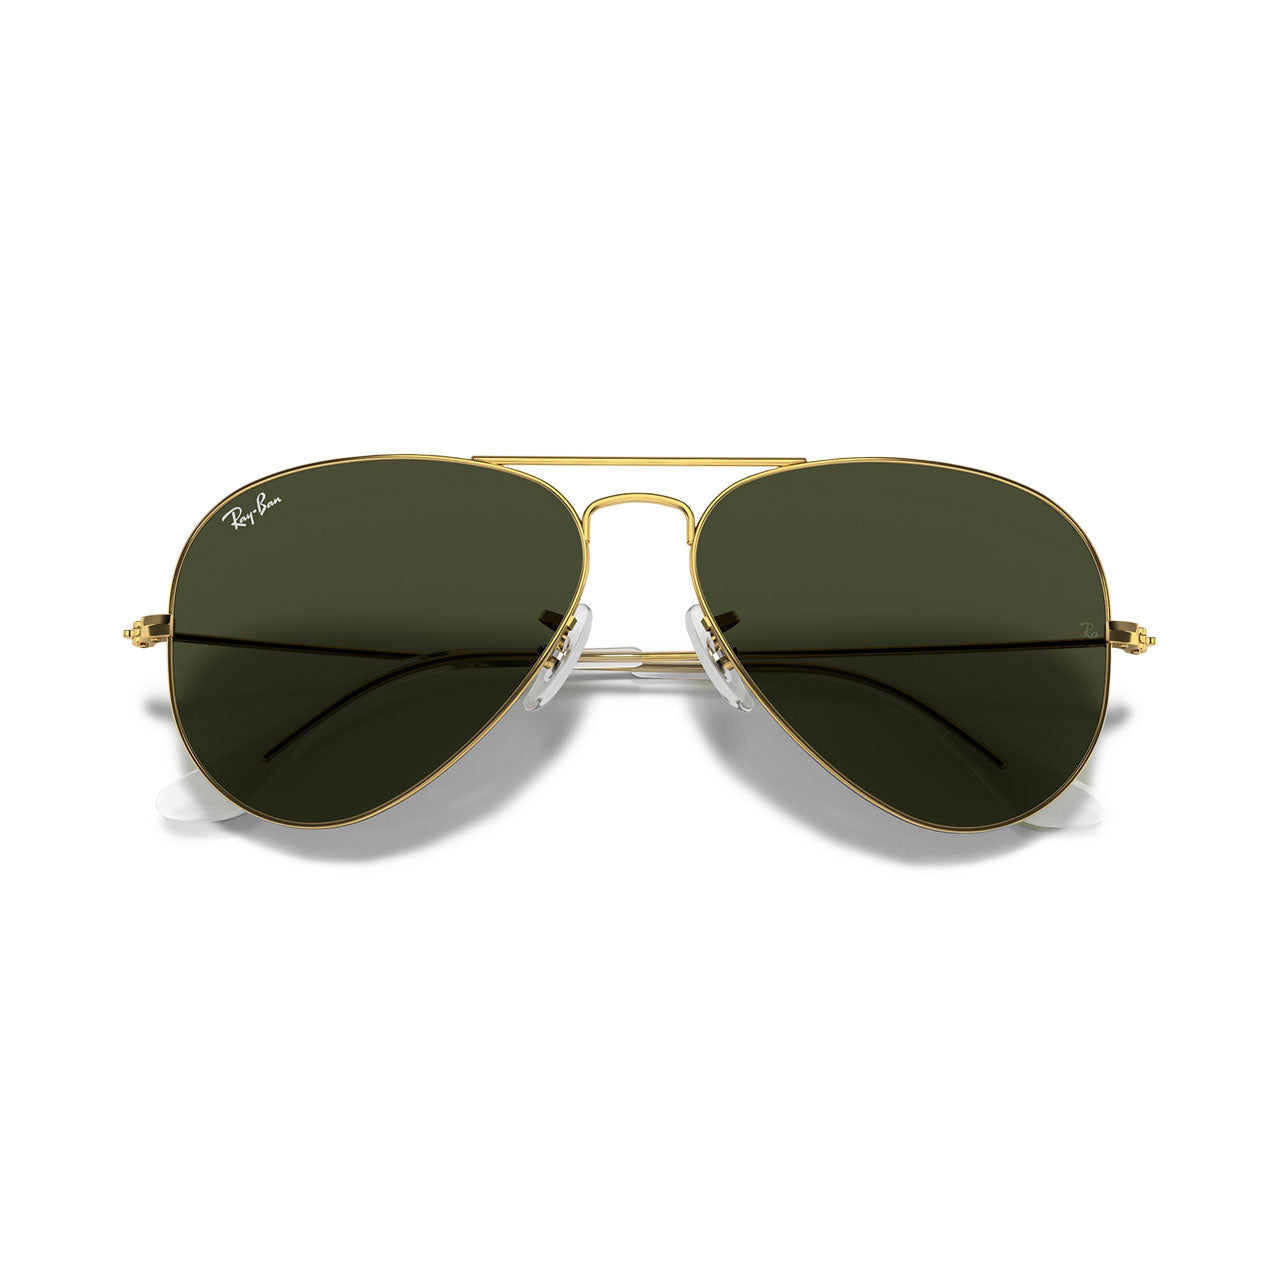 Tom Cruise’s Top Gun Ray-Ban Aviator Sunglasses